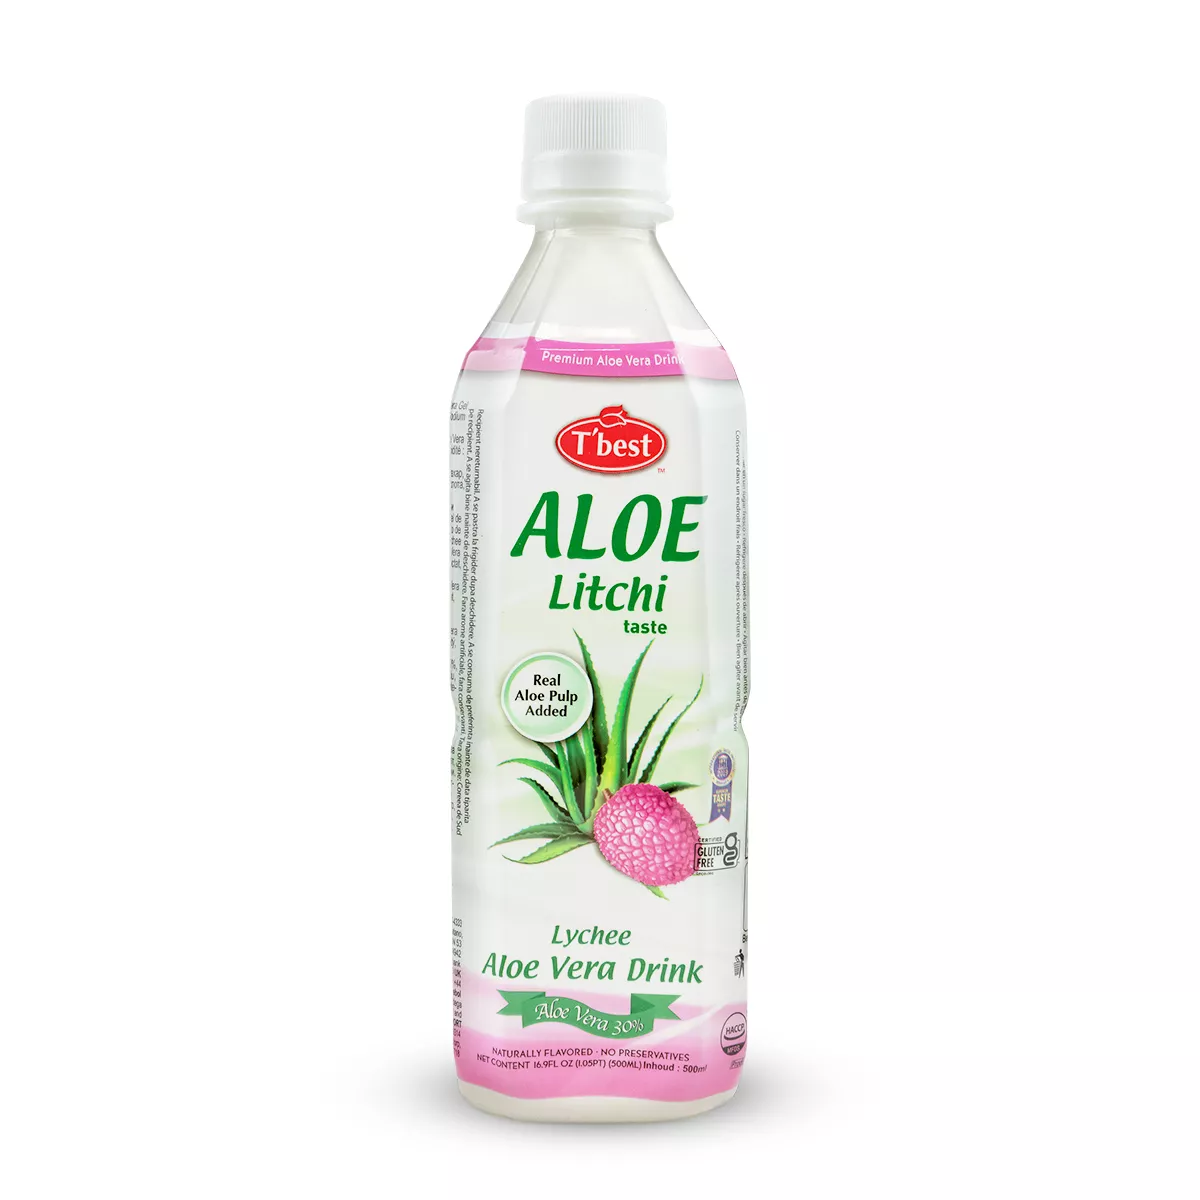 Bautura Aloe Vera Lychee T'BEST 500ml, [],asianfood.ro